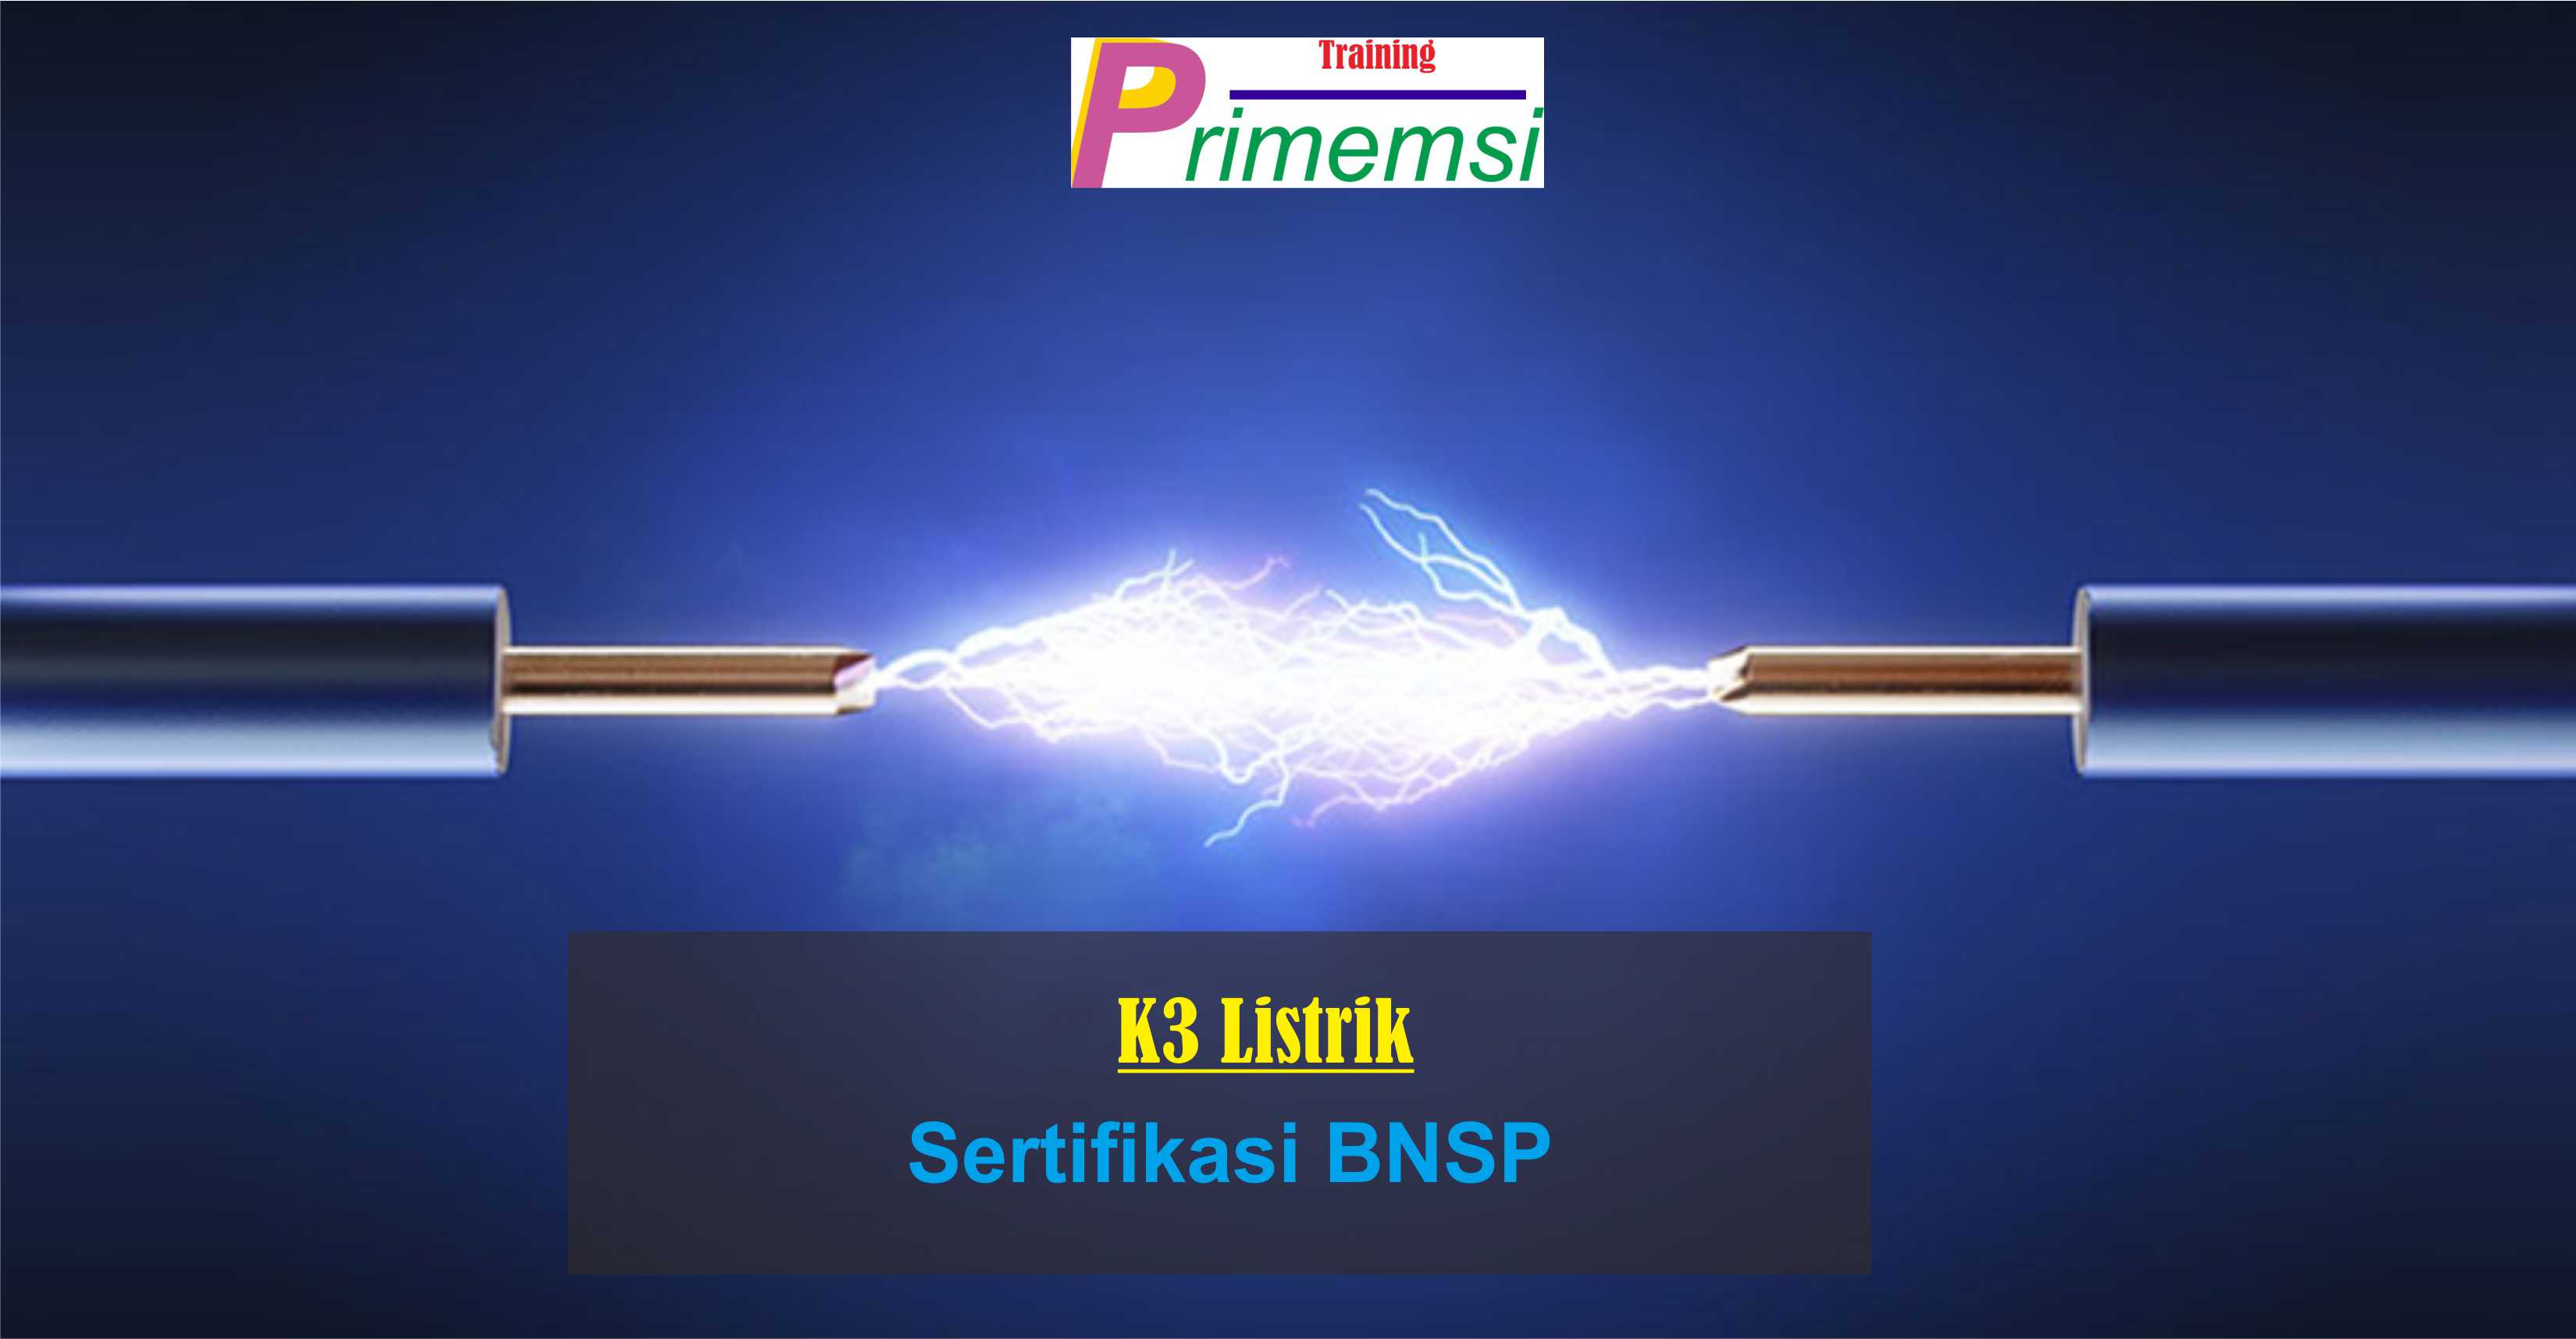 training k3 listrik sertifikasi bnsp